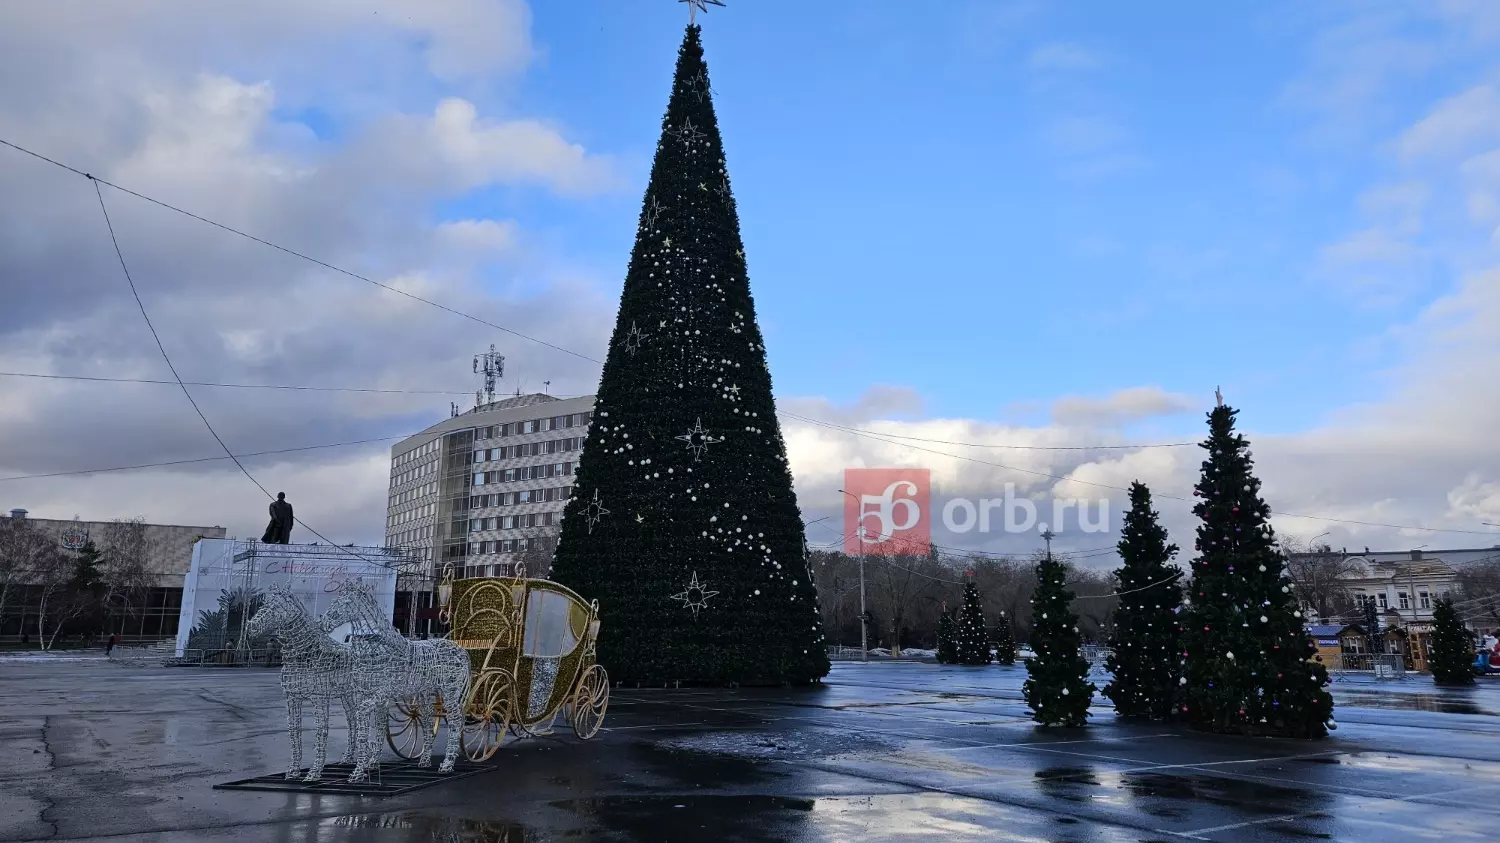 Арт-объект на площади Ленина